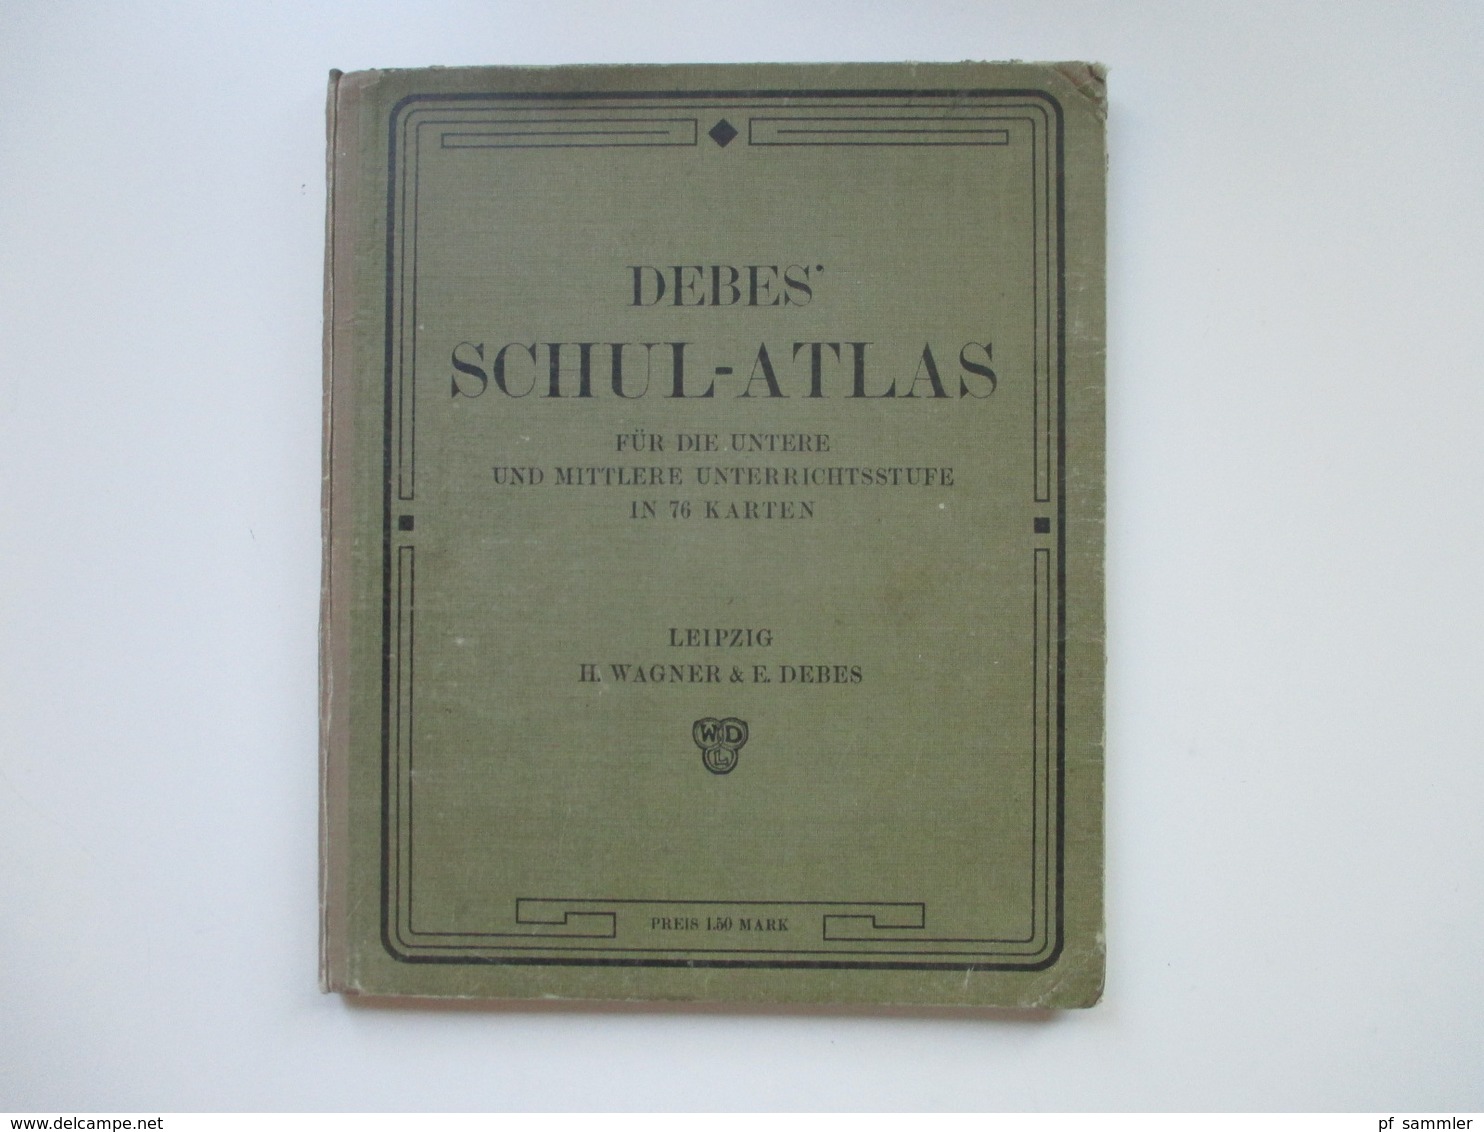 Debes Schulatlas Mit 76 Karten Leipzig H. Wagner & E. Debes. Jahr 1914 - Mapamundis